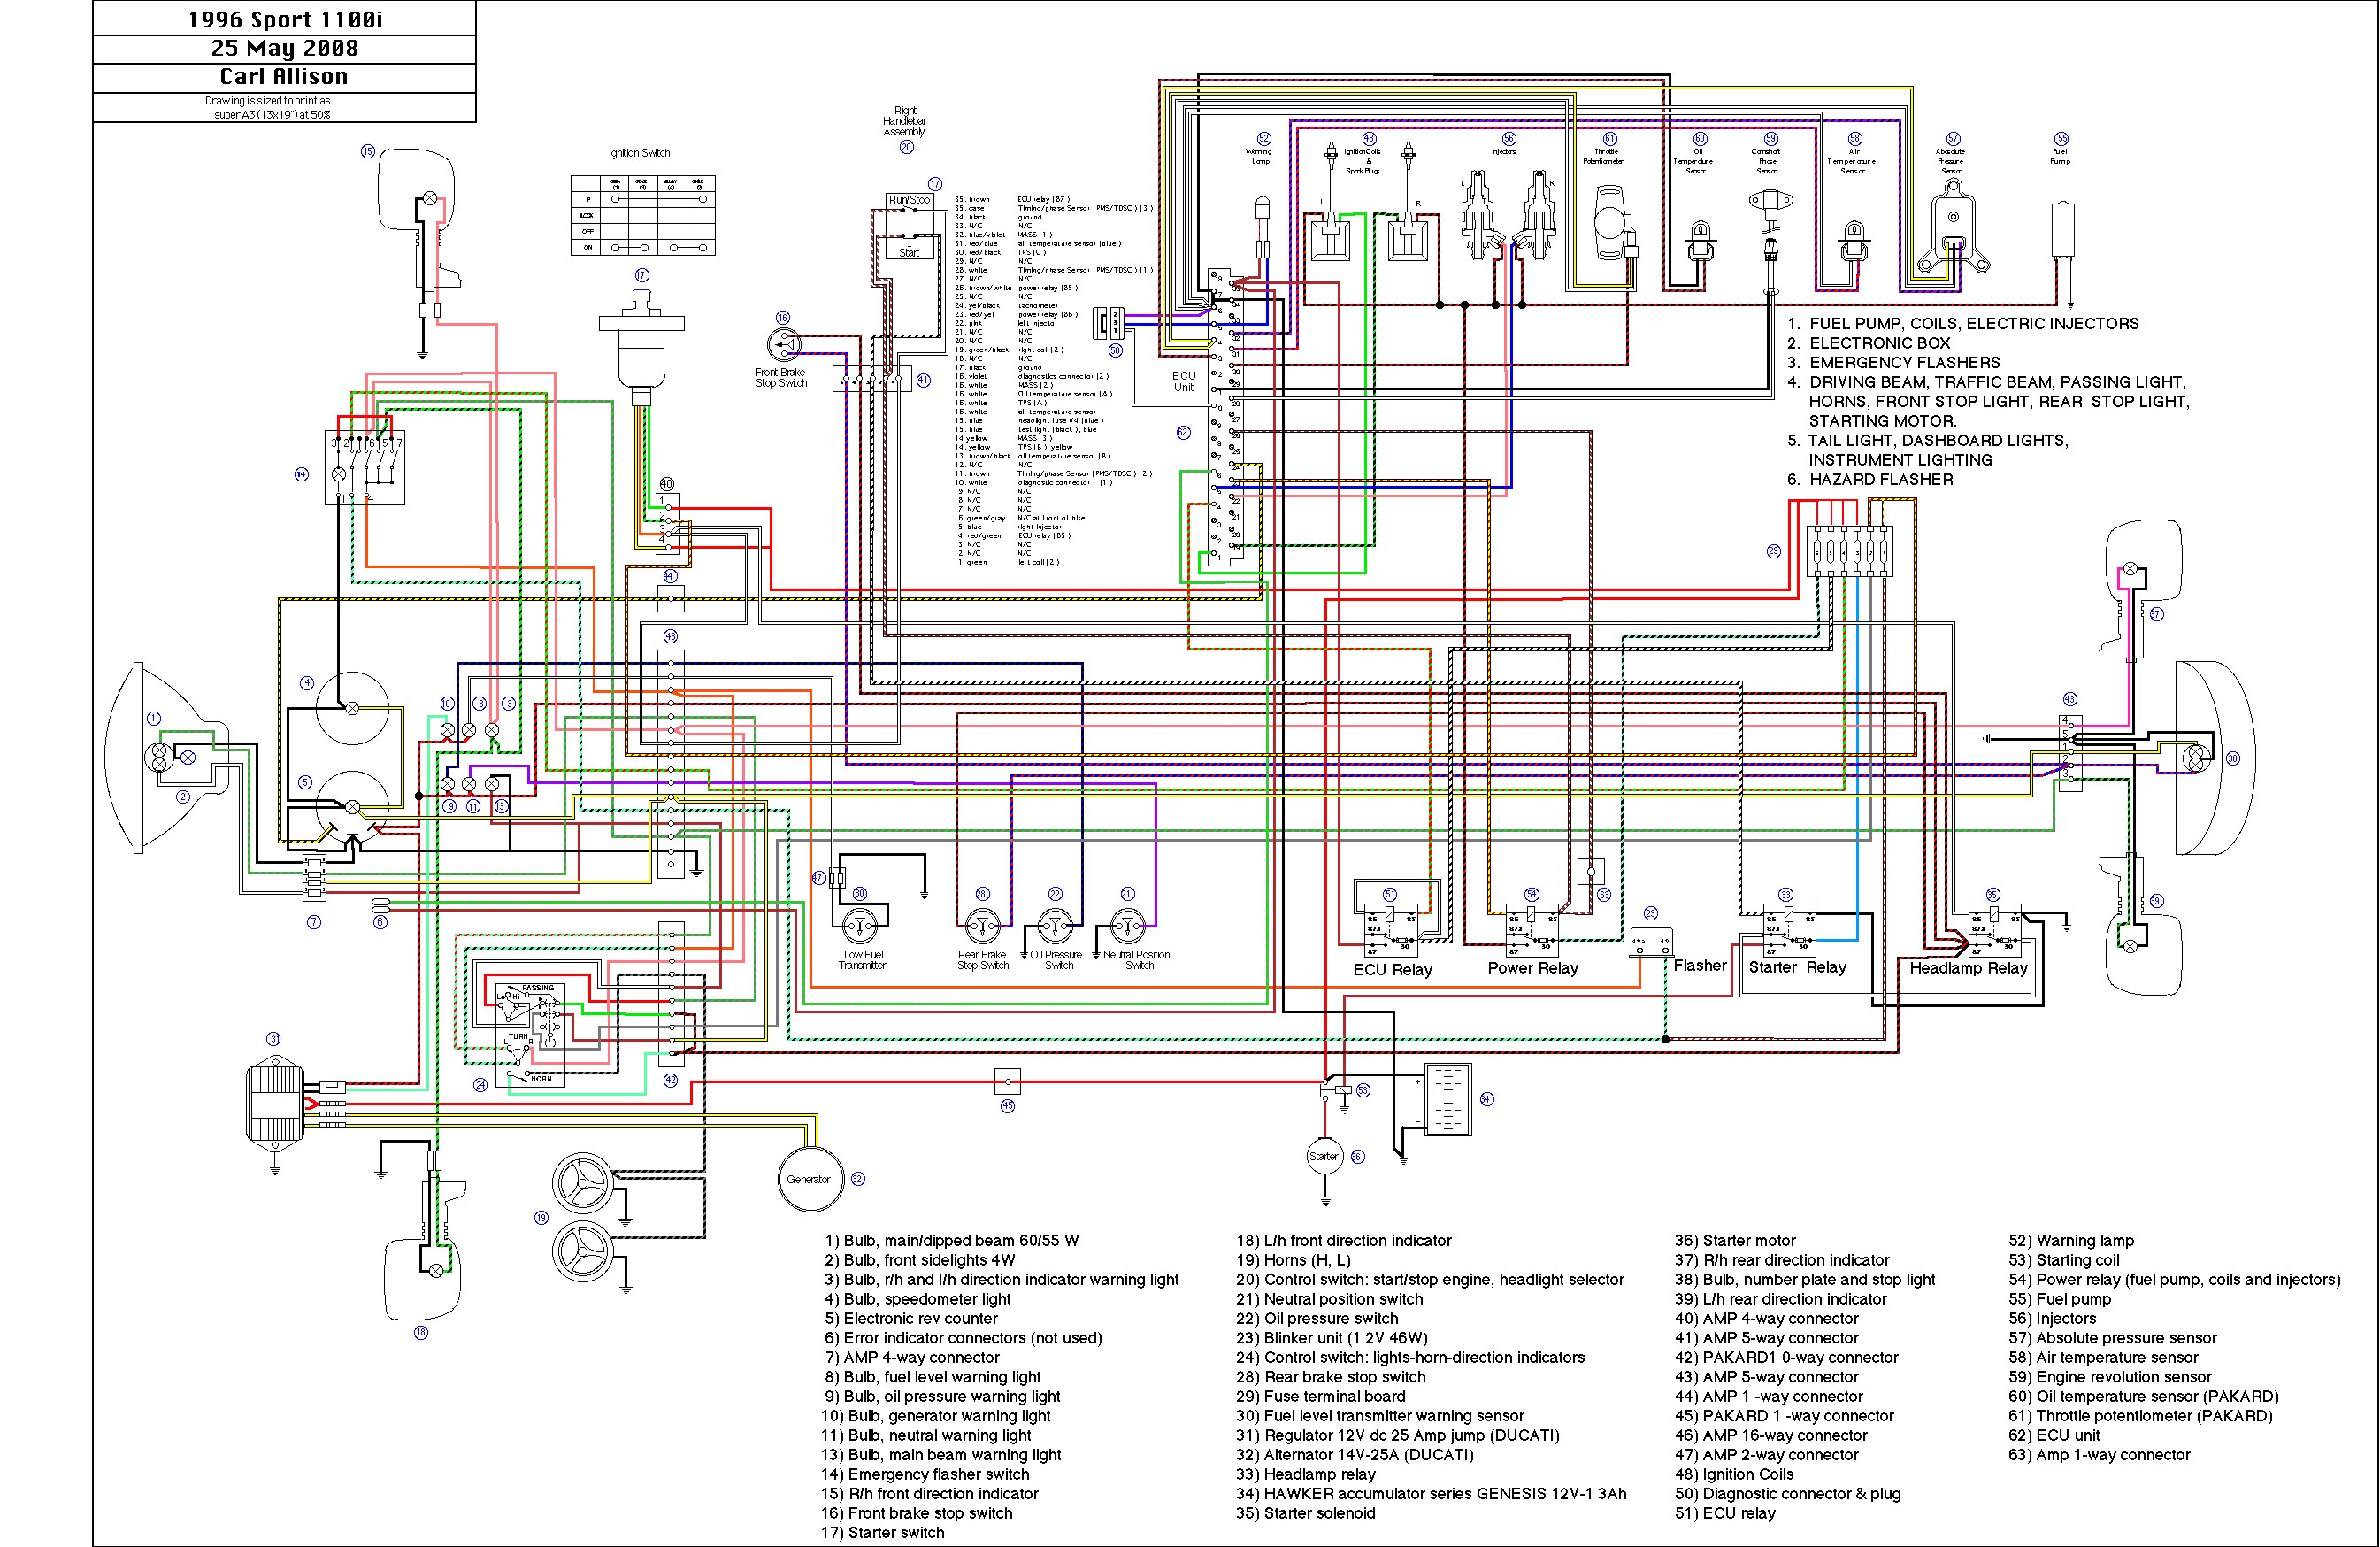 Vauxhall Wiring Diagram Pdf - Complete Wiring Schemas